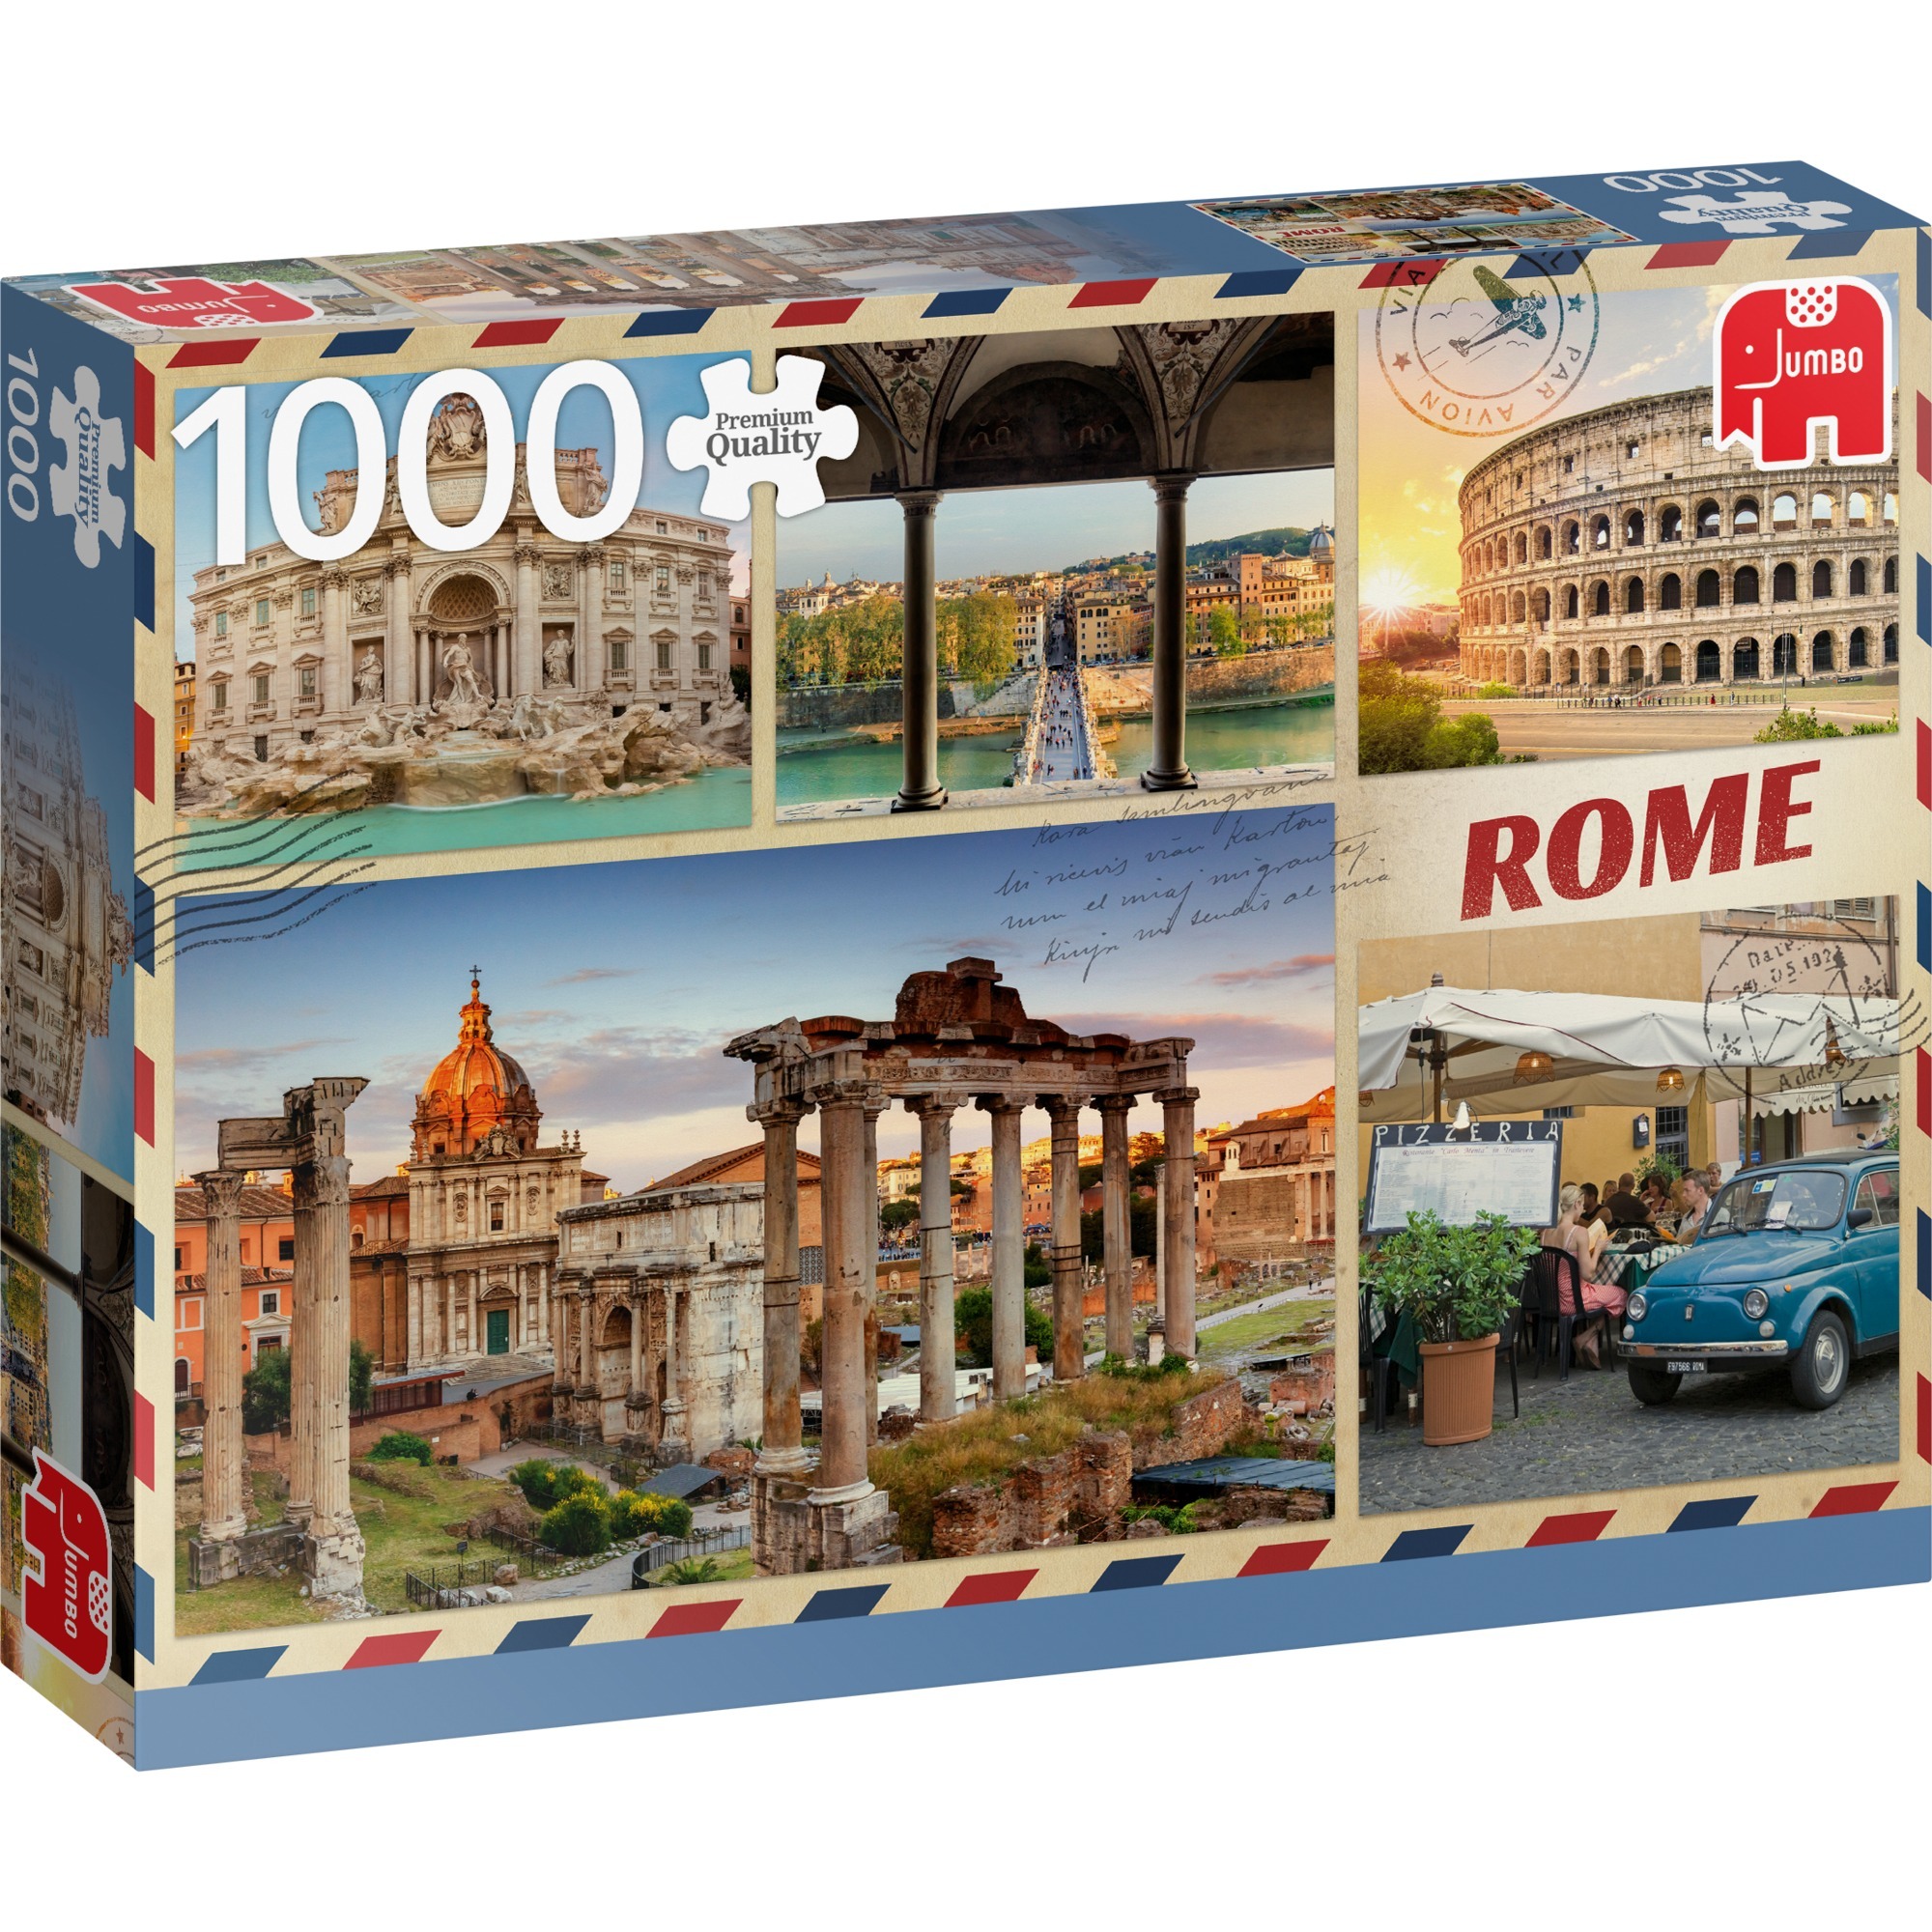 Image of Alternate - Puzzle Grüße aus Rom online einkaufen bei Alternate